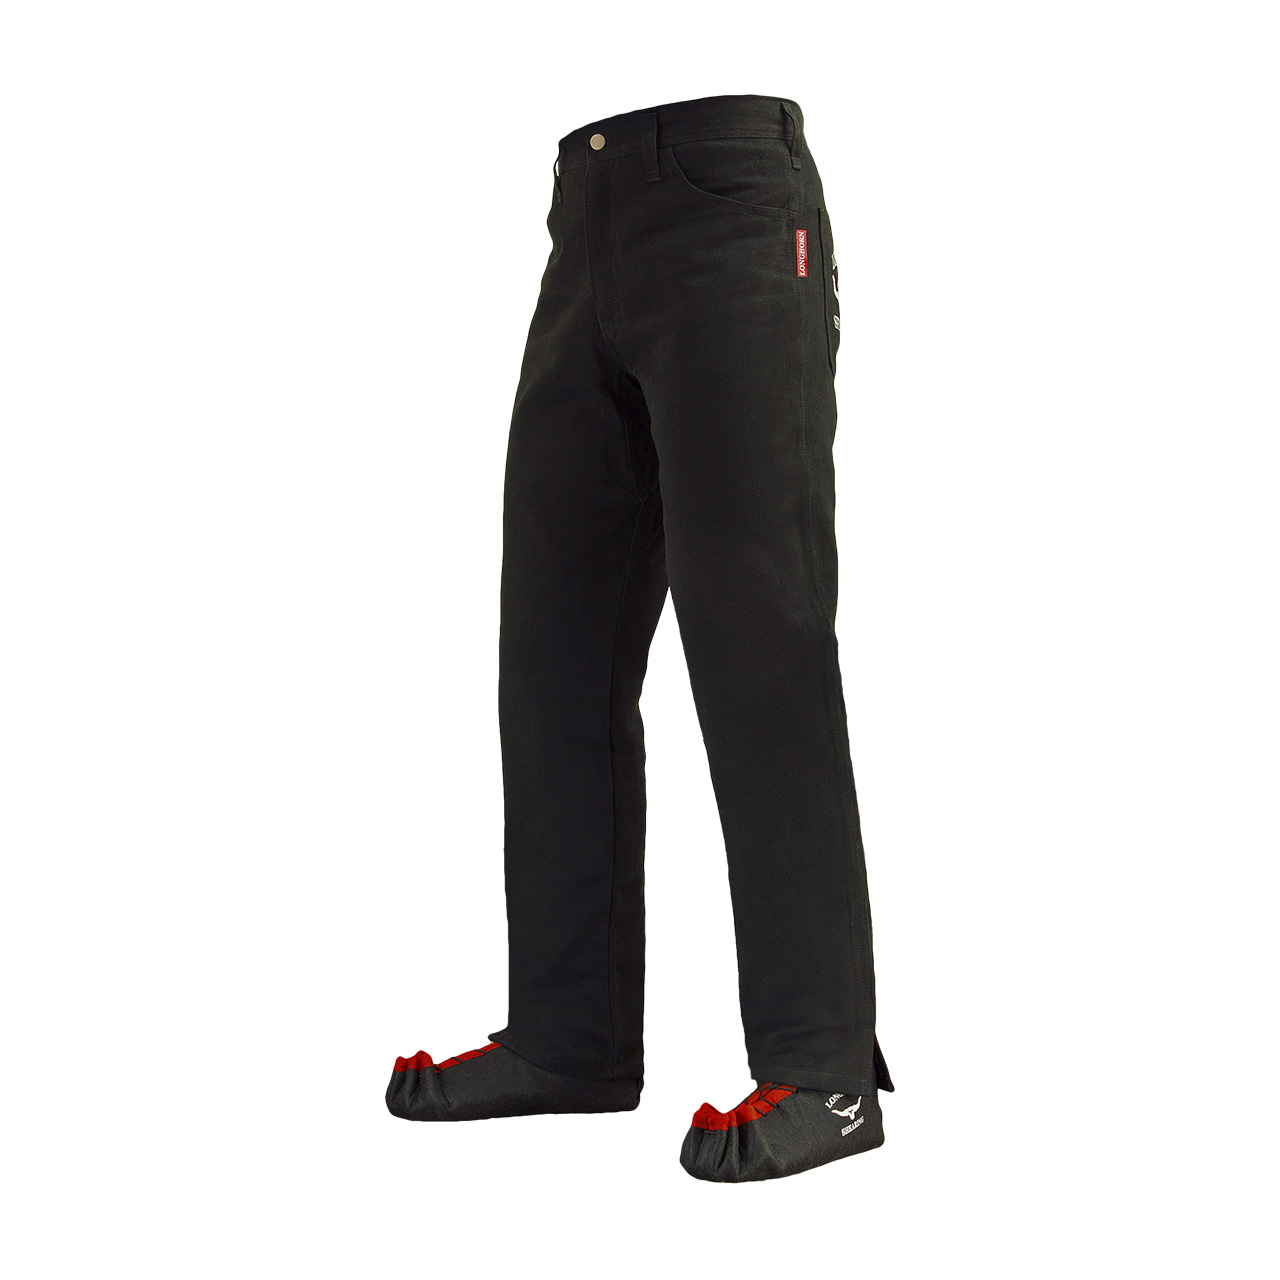 Longhorn™ kalhoty pro střihače ovcí s 2 předními kapsami velikost Short 38/28 7S